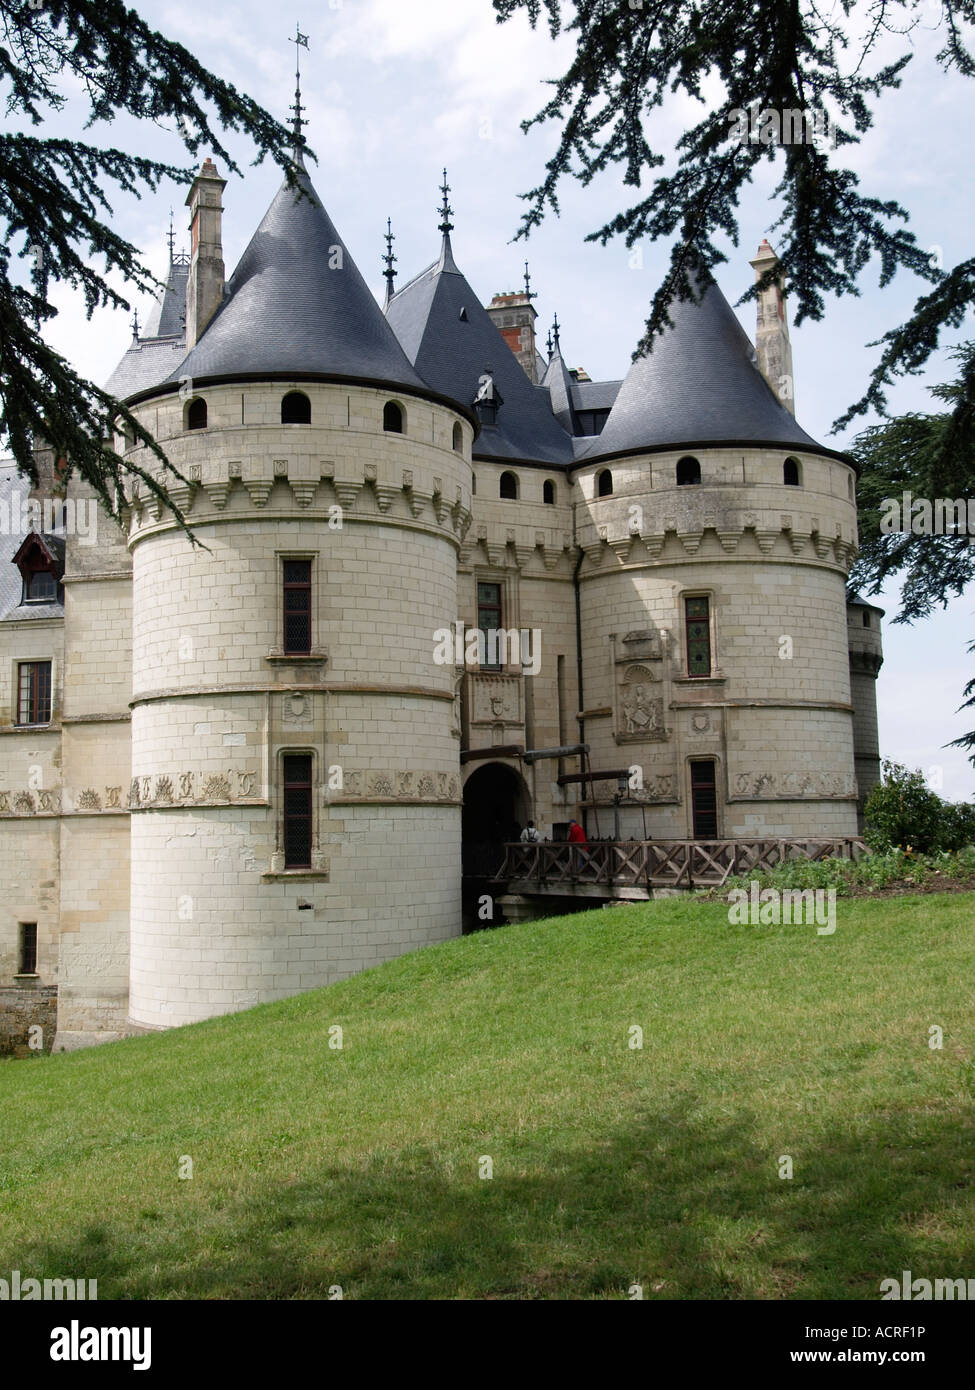 Entrance of the Chateau Chaumont sur Loire castle Loire valley France Stock Photo